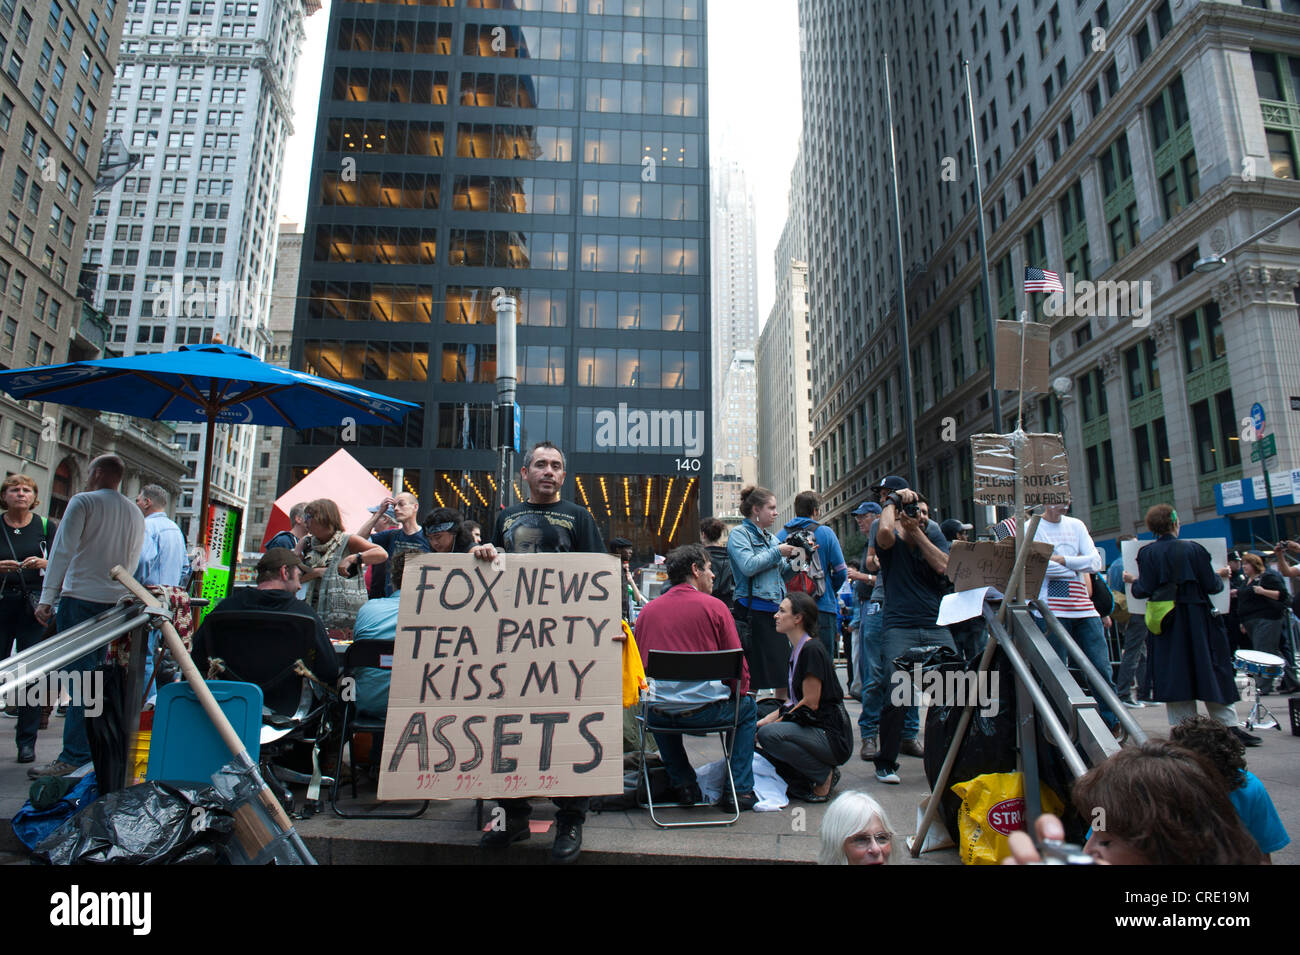 La democrazia, di protesta, occupano Wall Street circolazione, protestor tenendo un cartello, lettering "Fox News Tea Party kiss la mia attività" Foto Stock